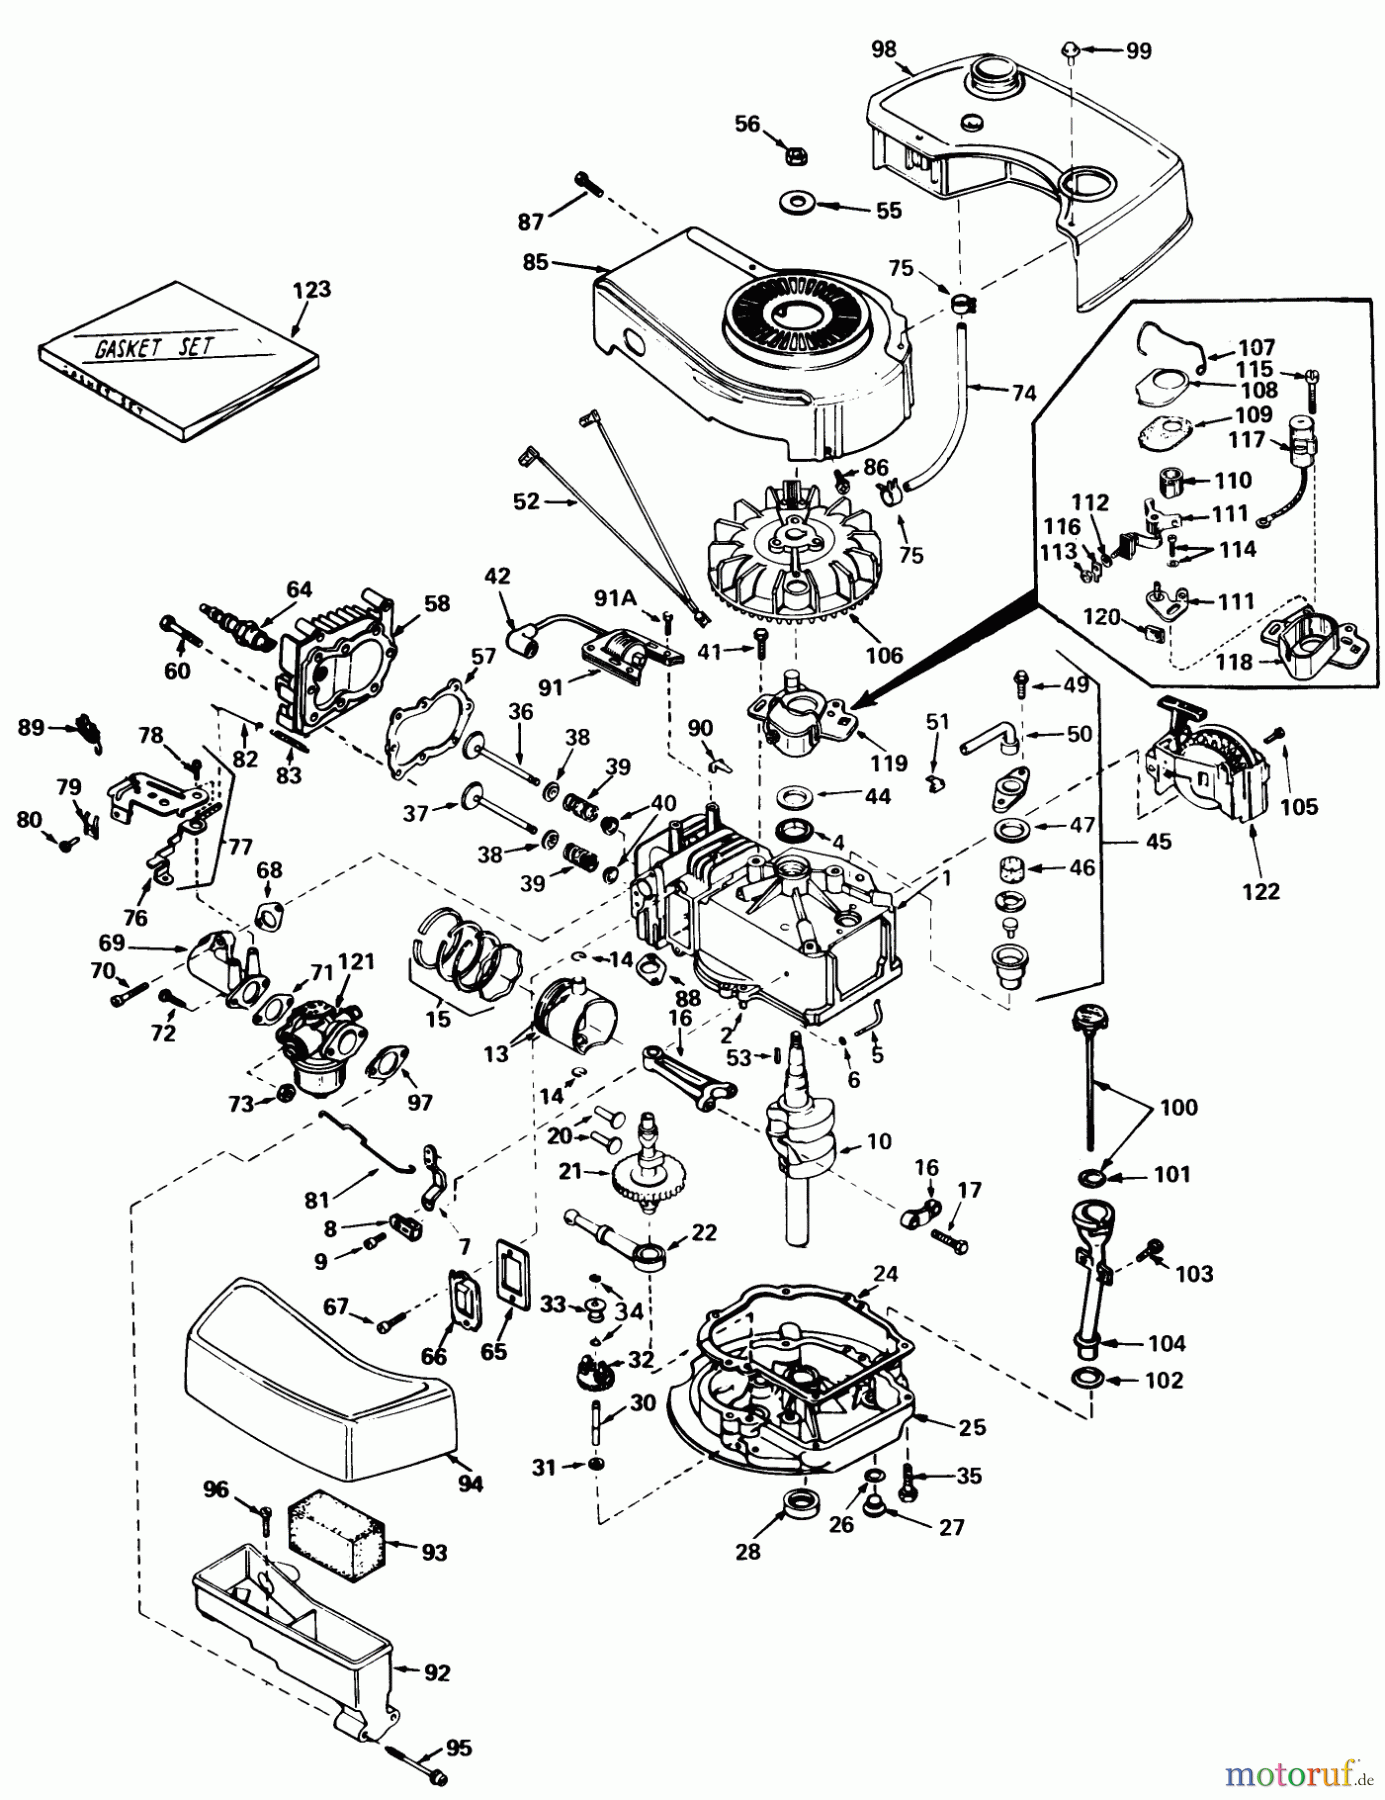  Toro Neu Mowers, Walk-Behind Seite 1 20762 - Toro Lawnmower, 1979 (9000001-9999999) ENGINE TECUMSEH MODEL NO. TNT 100-10059C